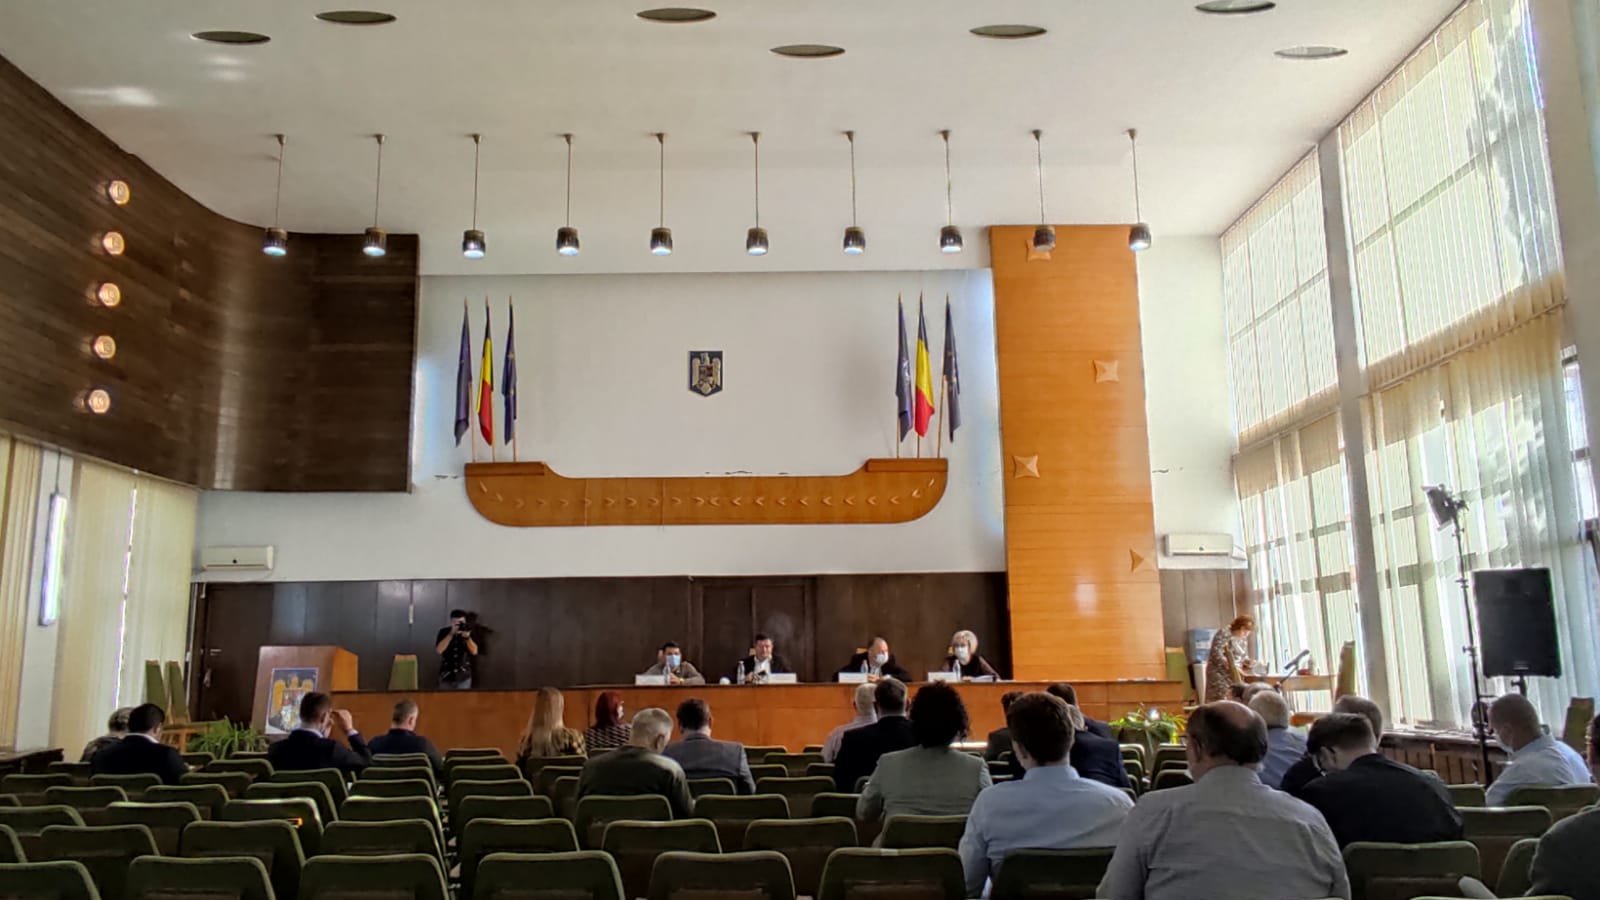  LIVE: Ședința Consiliului Județean Iași. Se dezbat proiecte referitoare la Aeroport